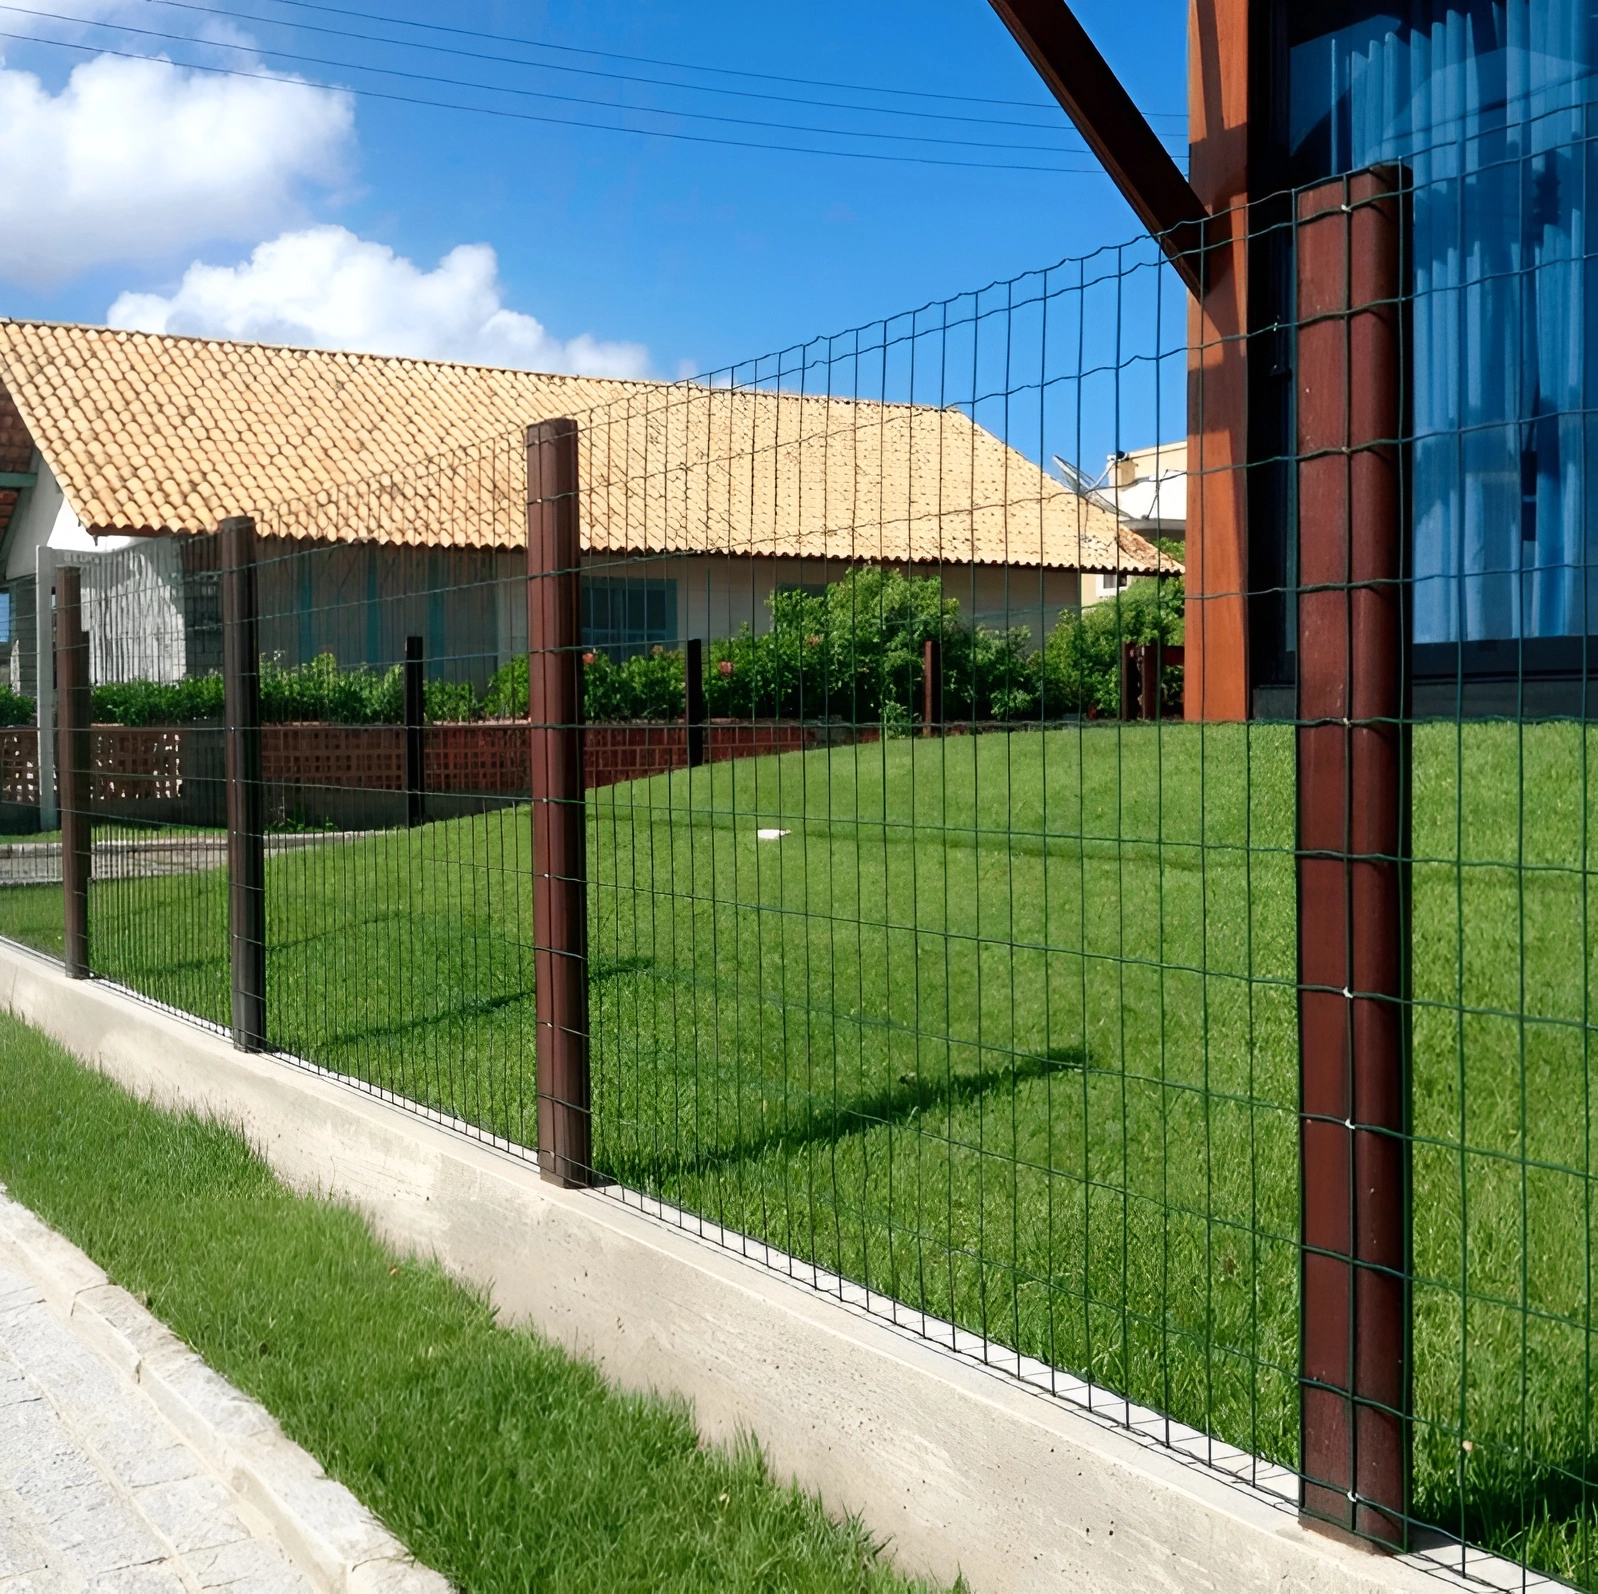 Imagem mostrando a aplicação da tela residência em um quintal de uma casa com tijolos marrons e com janelas de vidros compridas